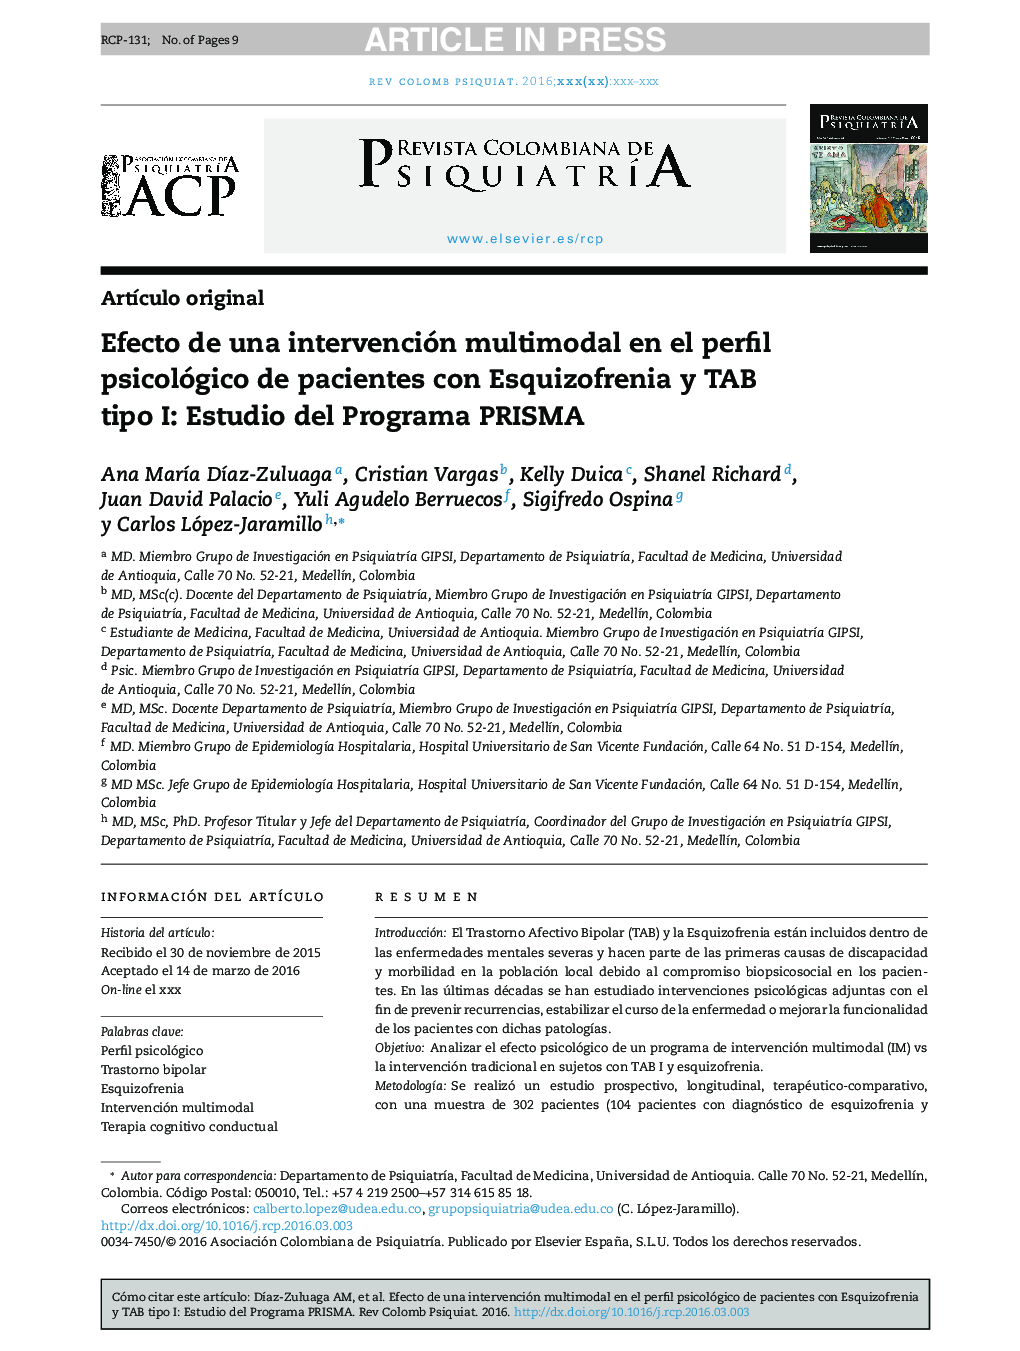 Efecto de una intervención multimodal en el perfil psicológico de pacientes con Esquizofrenia y TAB tipo I: Estudio del Programa PRISMA